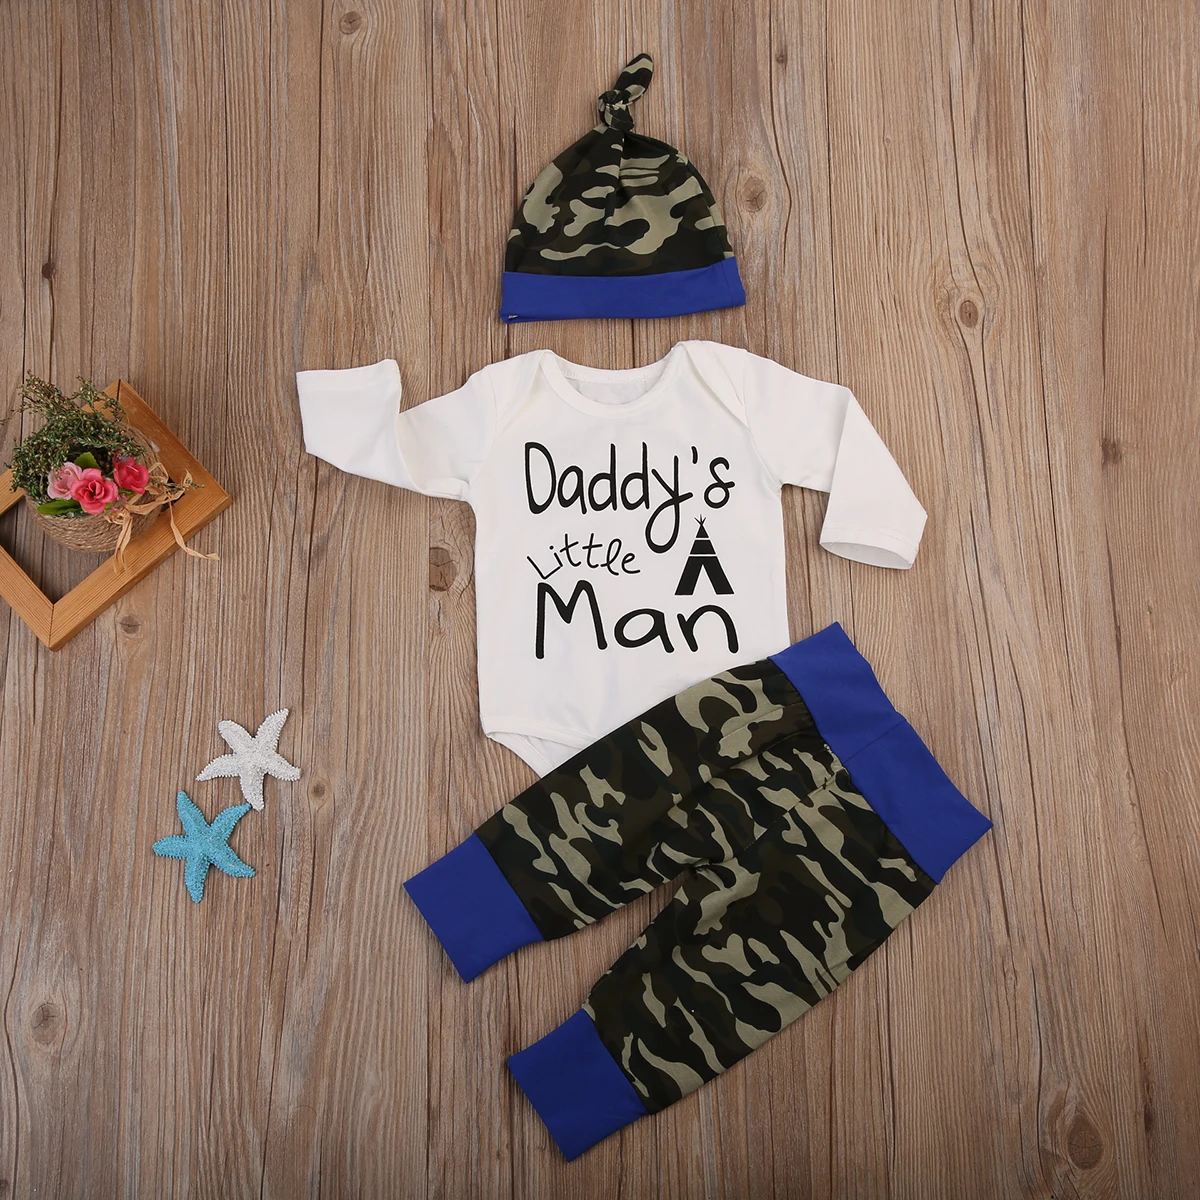 Одежда для малышей; хлопковый верхний комбинезон с длинными рукавами для маленьких мальчиков; камуфляжные штаны; шапка; комплект одежды из 3 предметов; От 0 до 2 лет